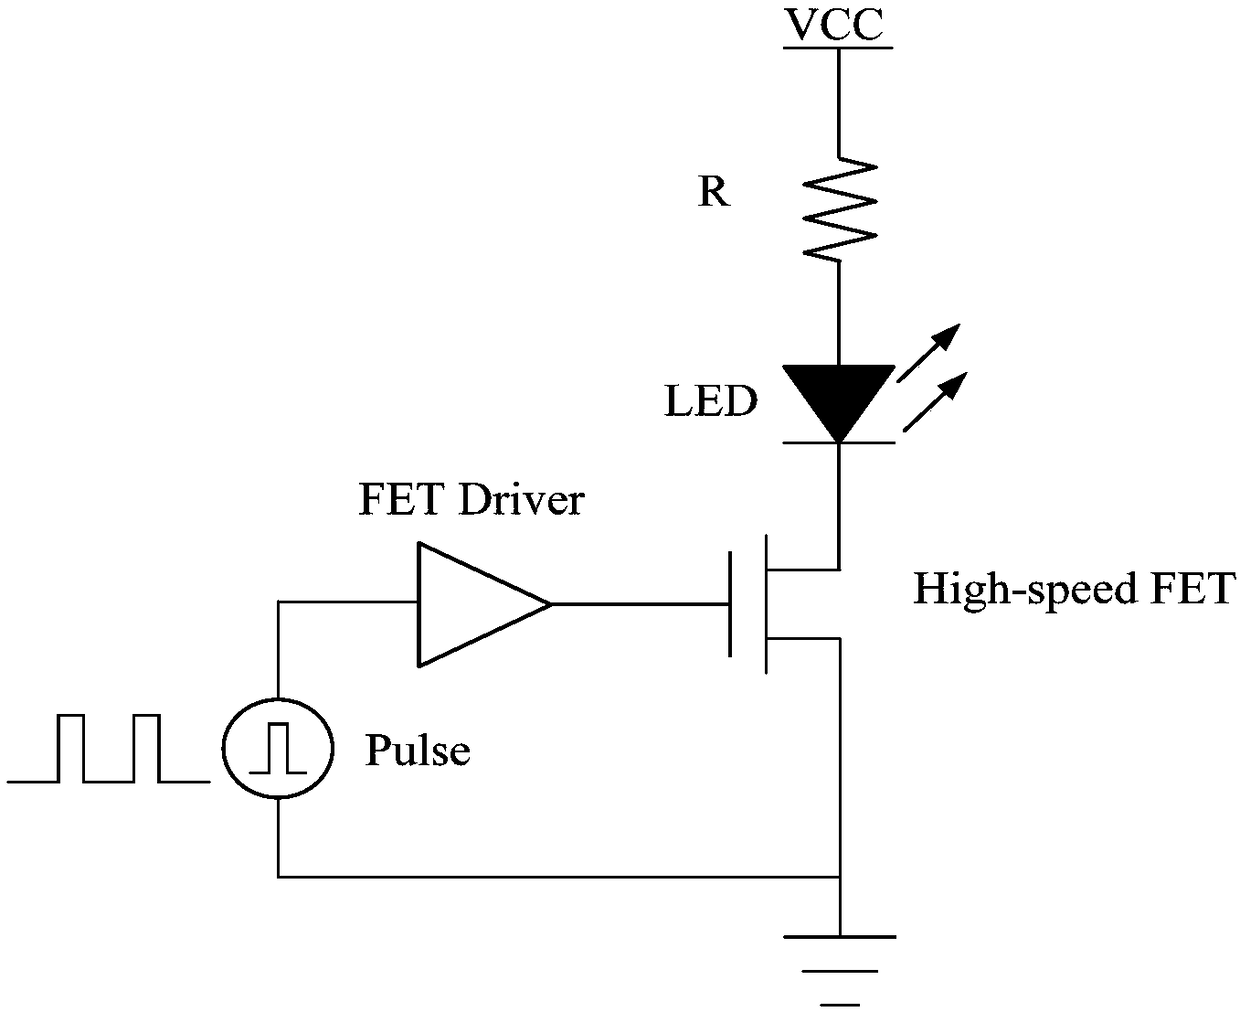 An ingan/gan LED nanosecond pulse drive circuit